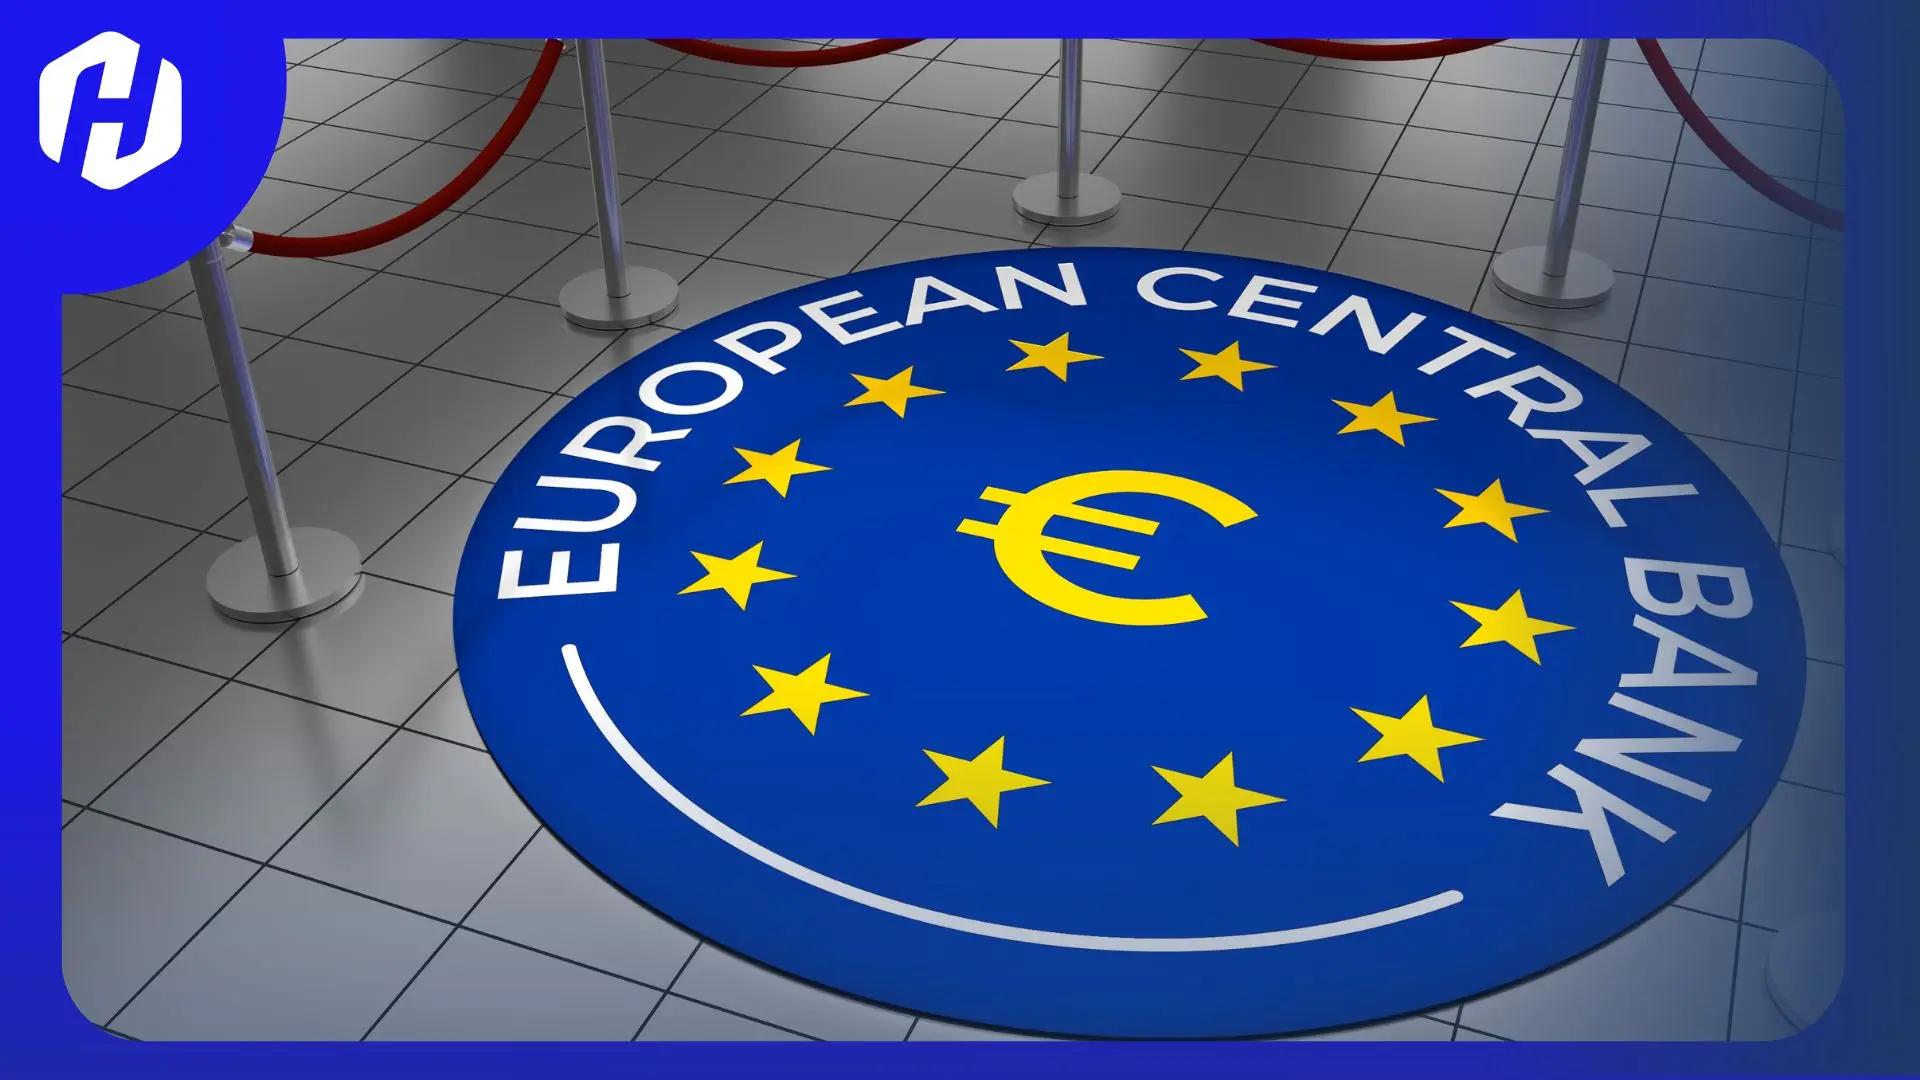 Bank Sentral Eropa, European Central Bank (ECB